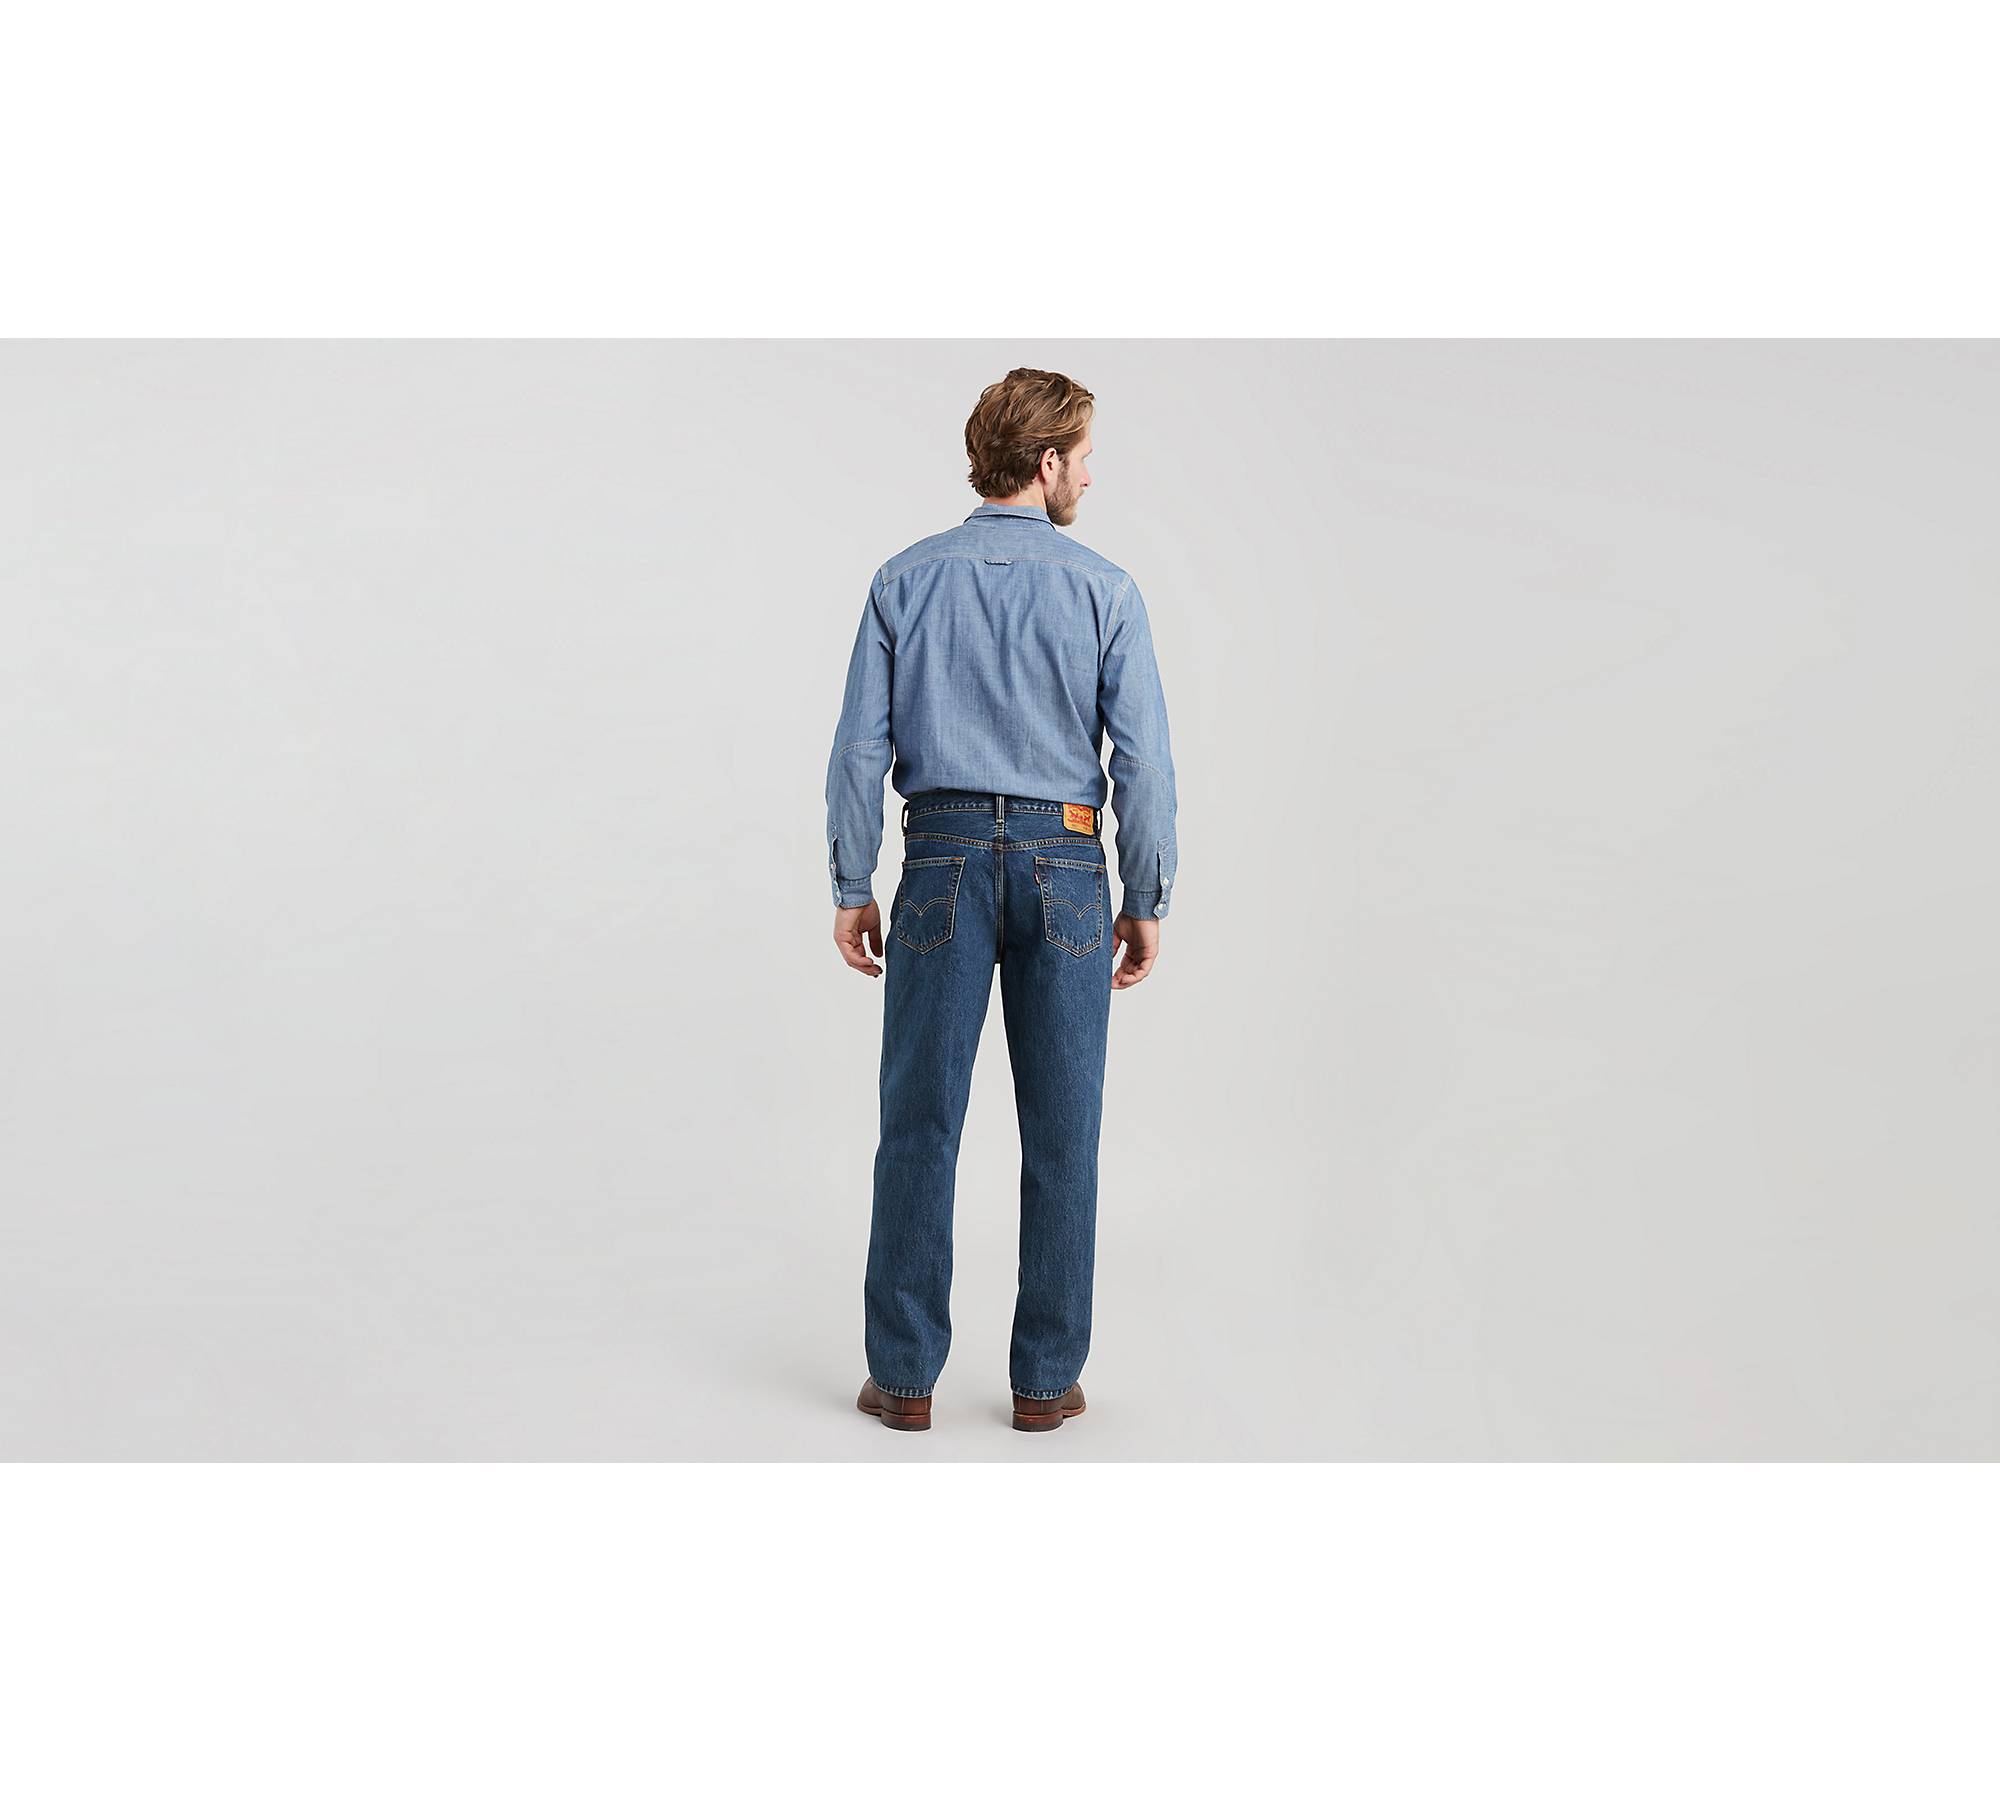 560™ Comfort Fit Men's Jeans - Dark Wash